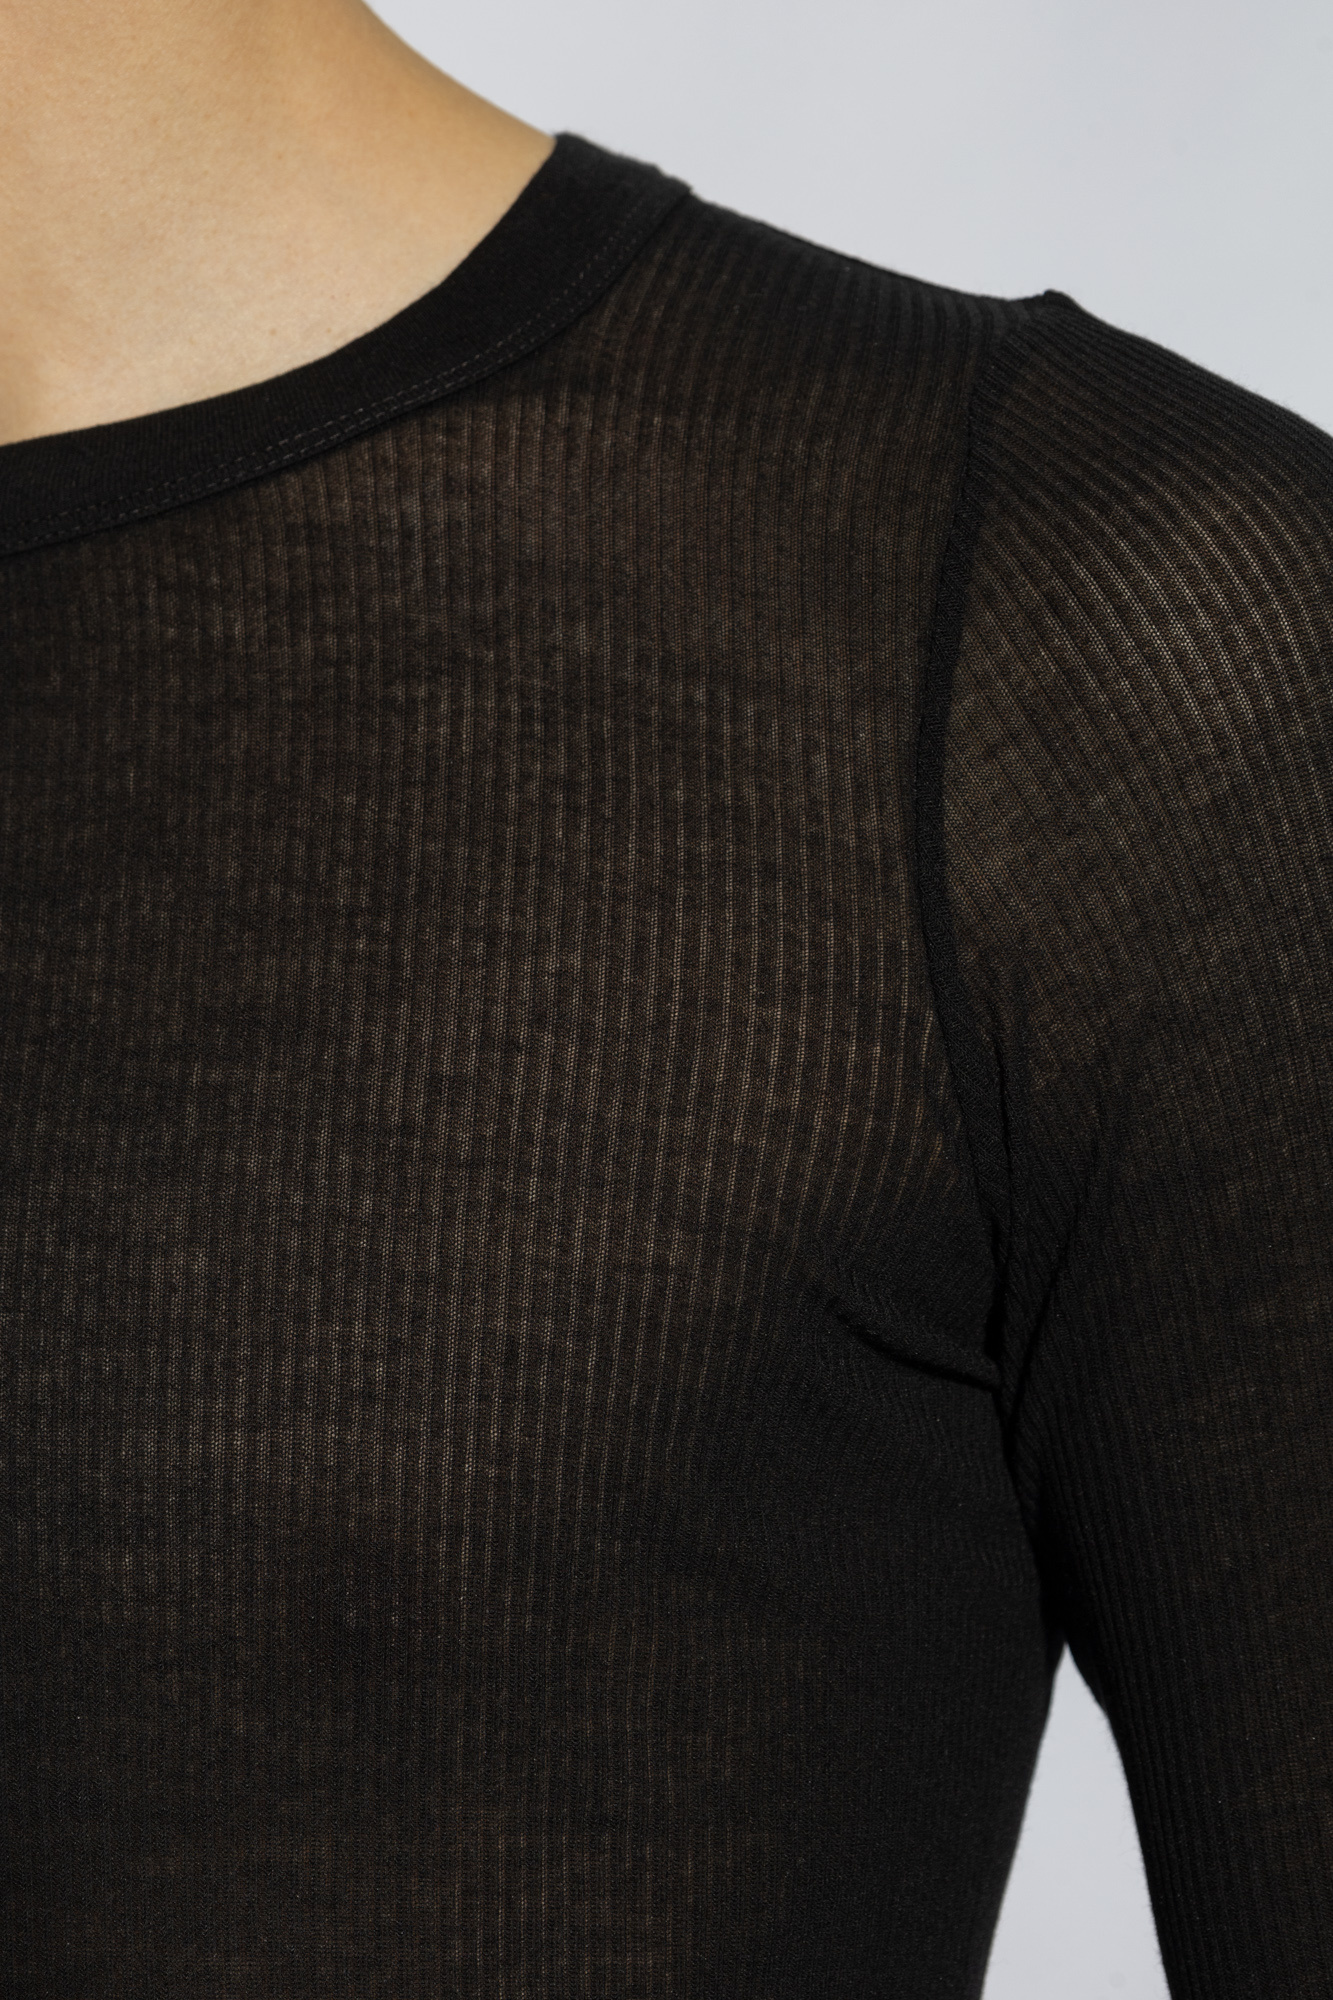 Rick Owens ‘Rib’ T-shirt with long sleeves